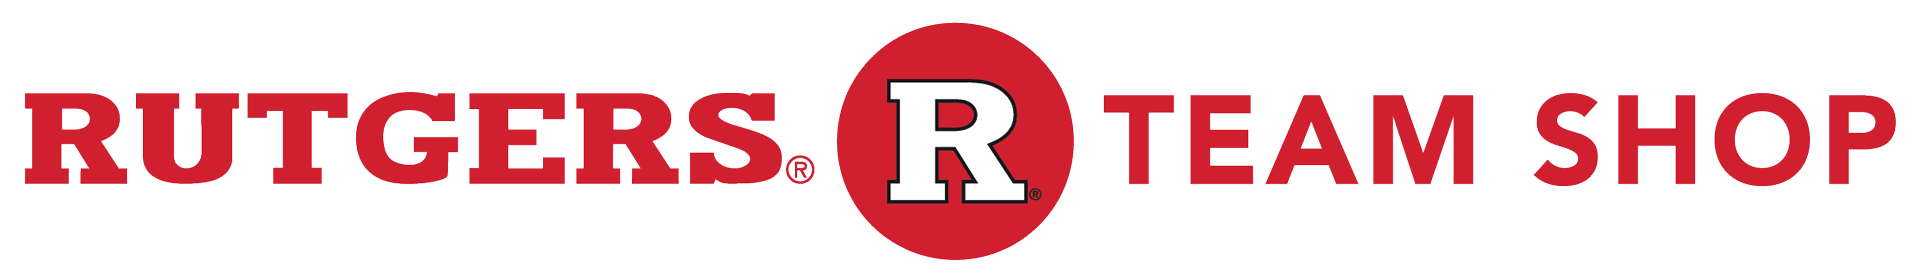 Rutgers Apparel, Rutgers University Gear, Rutgers Merchandise, Rutgers Clothing | Official Rutgers Team Shop Logo Image